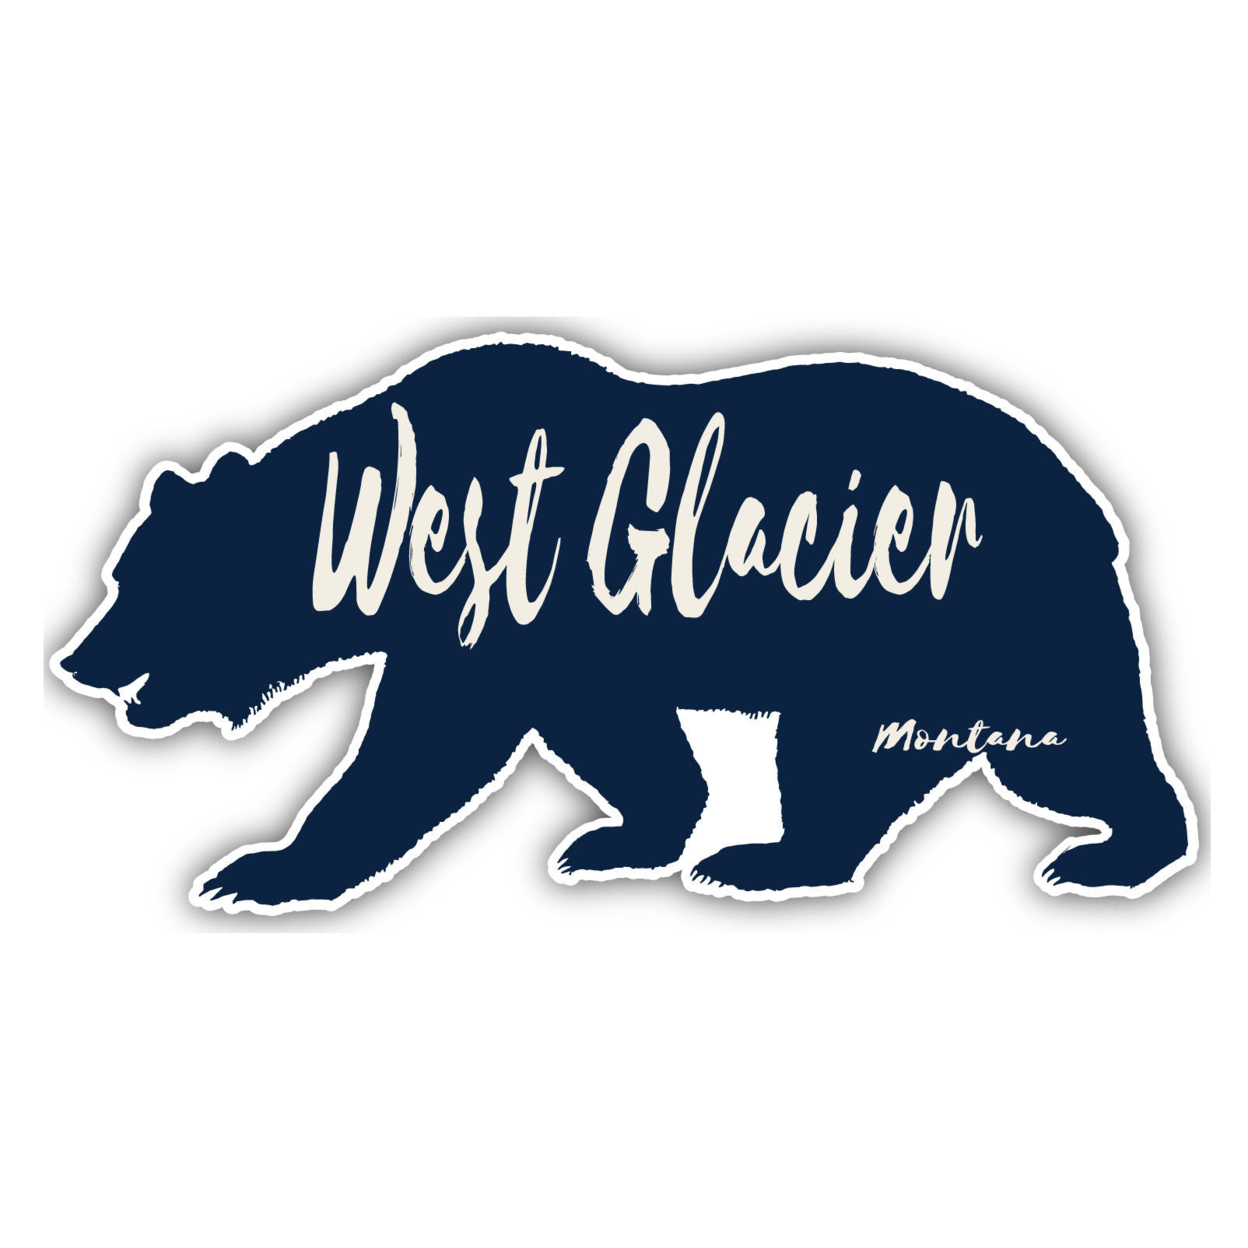 West Glacier Montana Souvenir Decorative Stickers (Choose Theme And Size) - Single Unit, 2-Inch, Bear